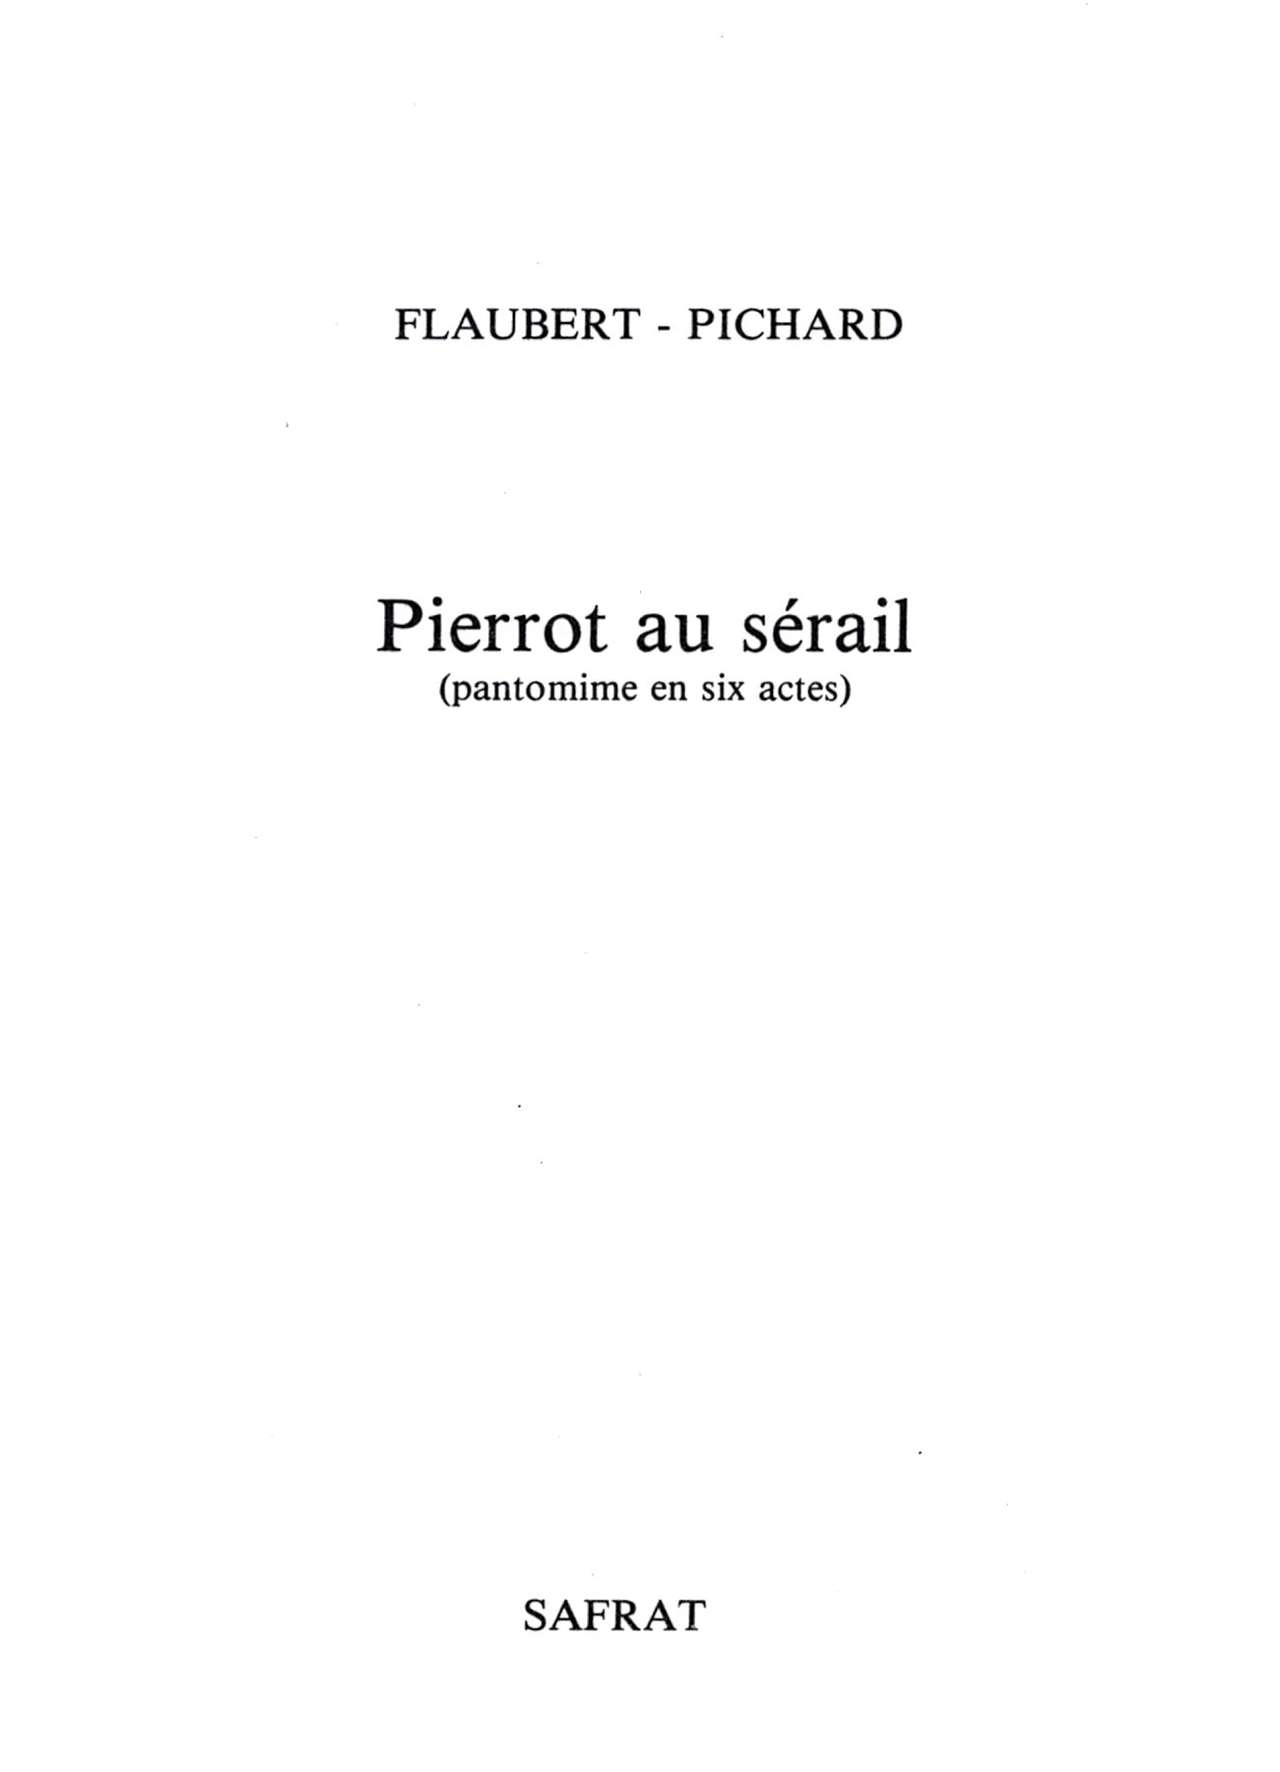 - Pierrot au Sérail numero d'image 4